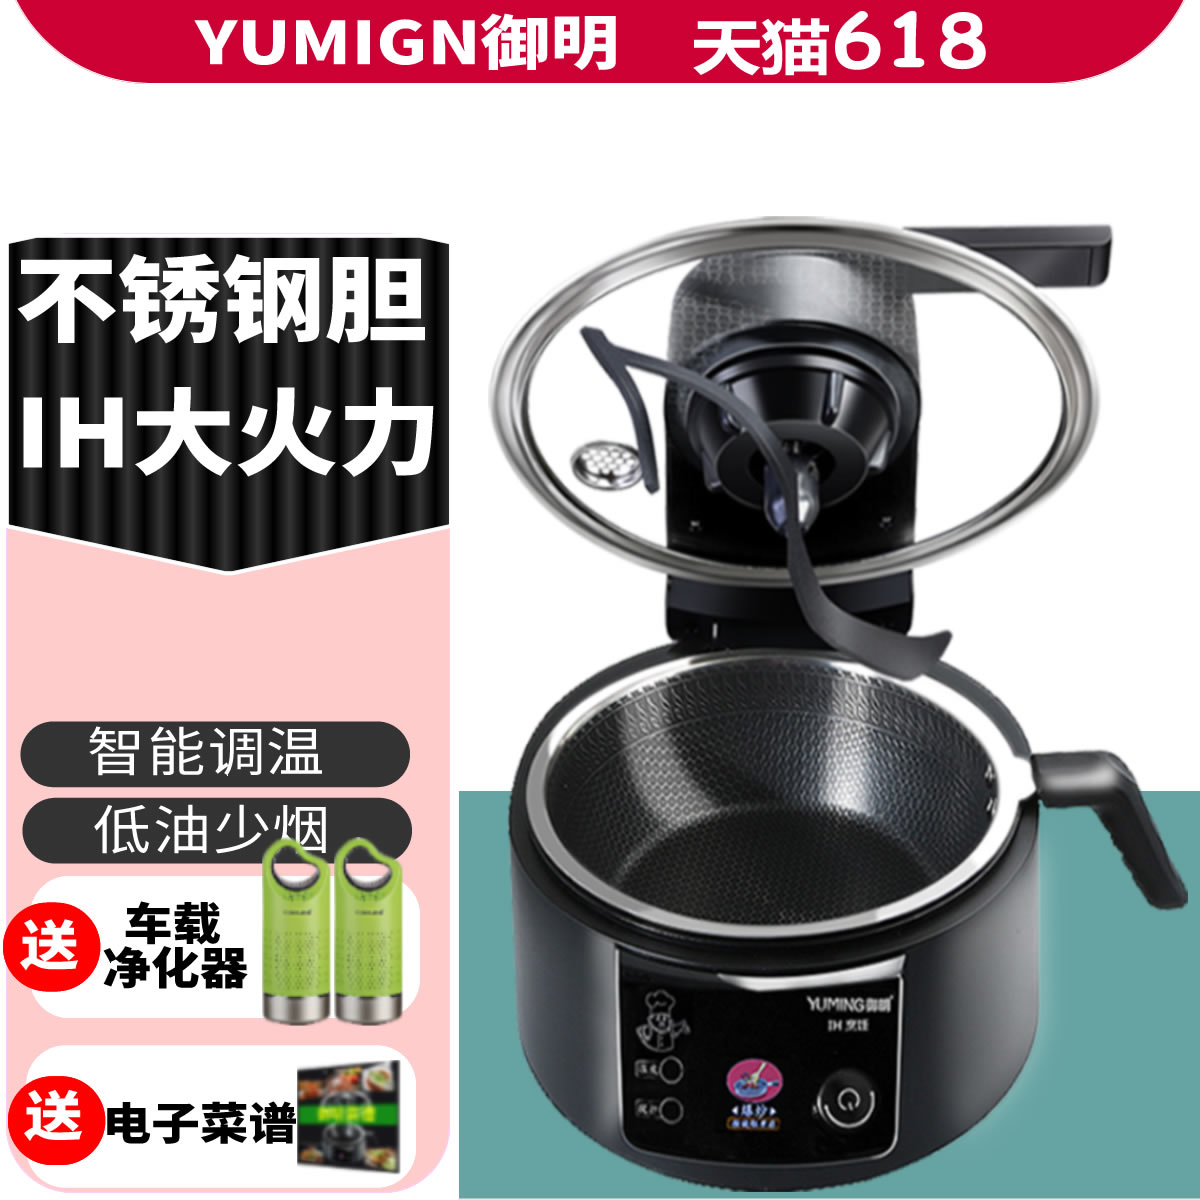 YUMING御明智能炒菜机8代机家用全自动炒菜机做饭机器人自动